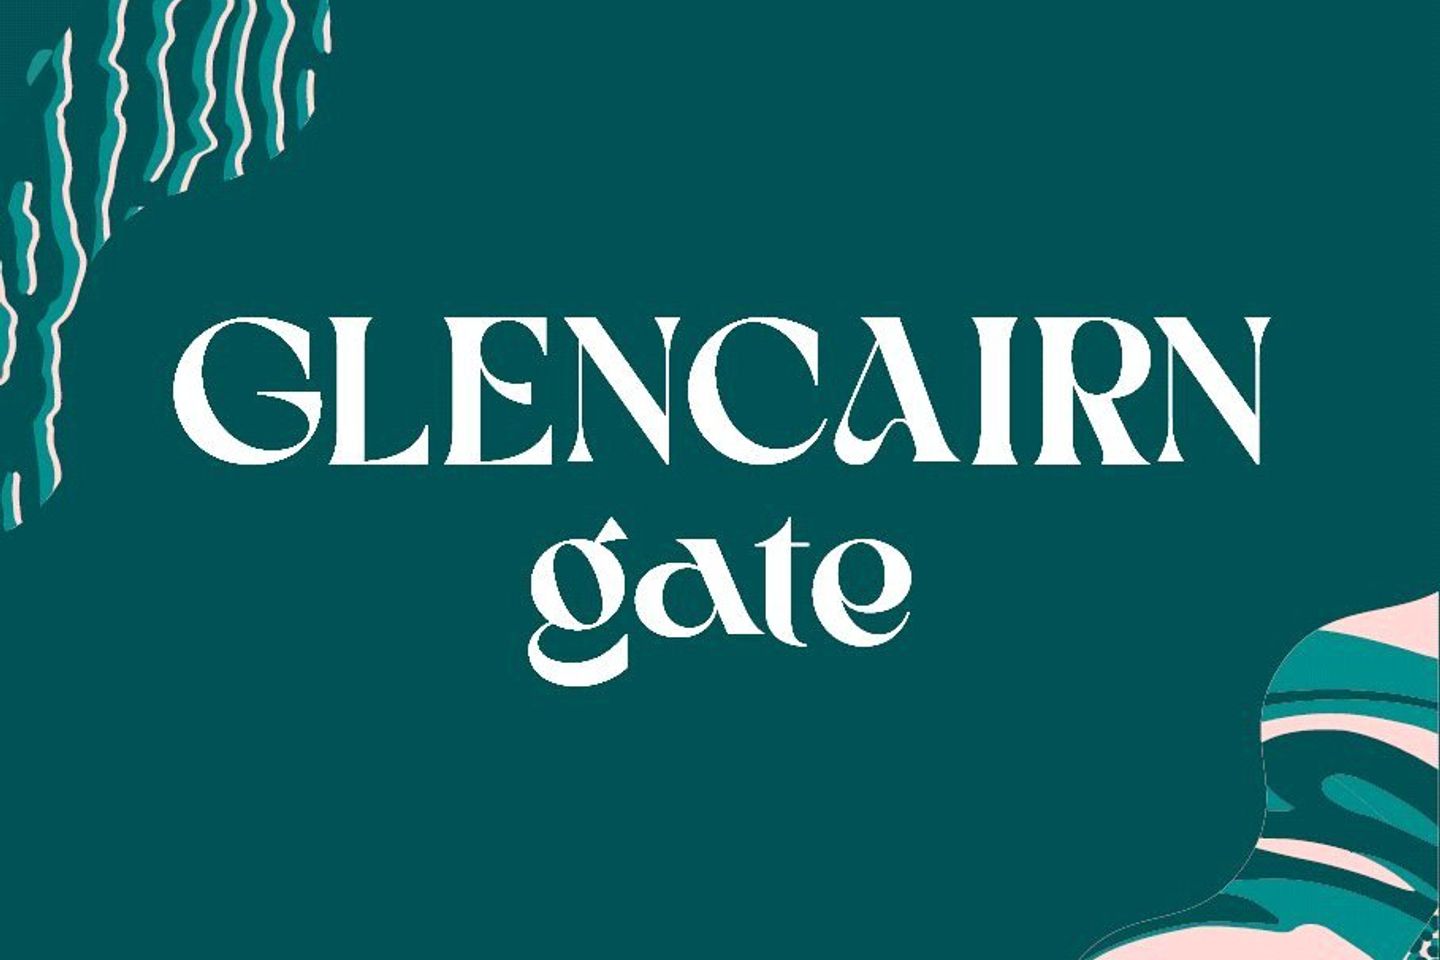 Beech, Glencairn Gate, Beech, Glencairn Gate, Leopardstown, Dublin 18